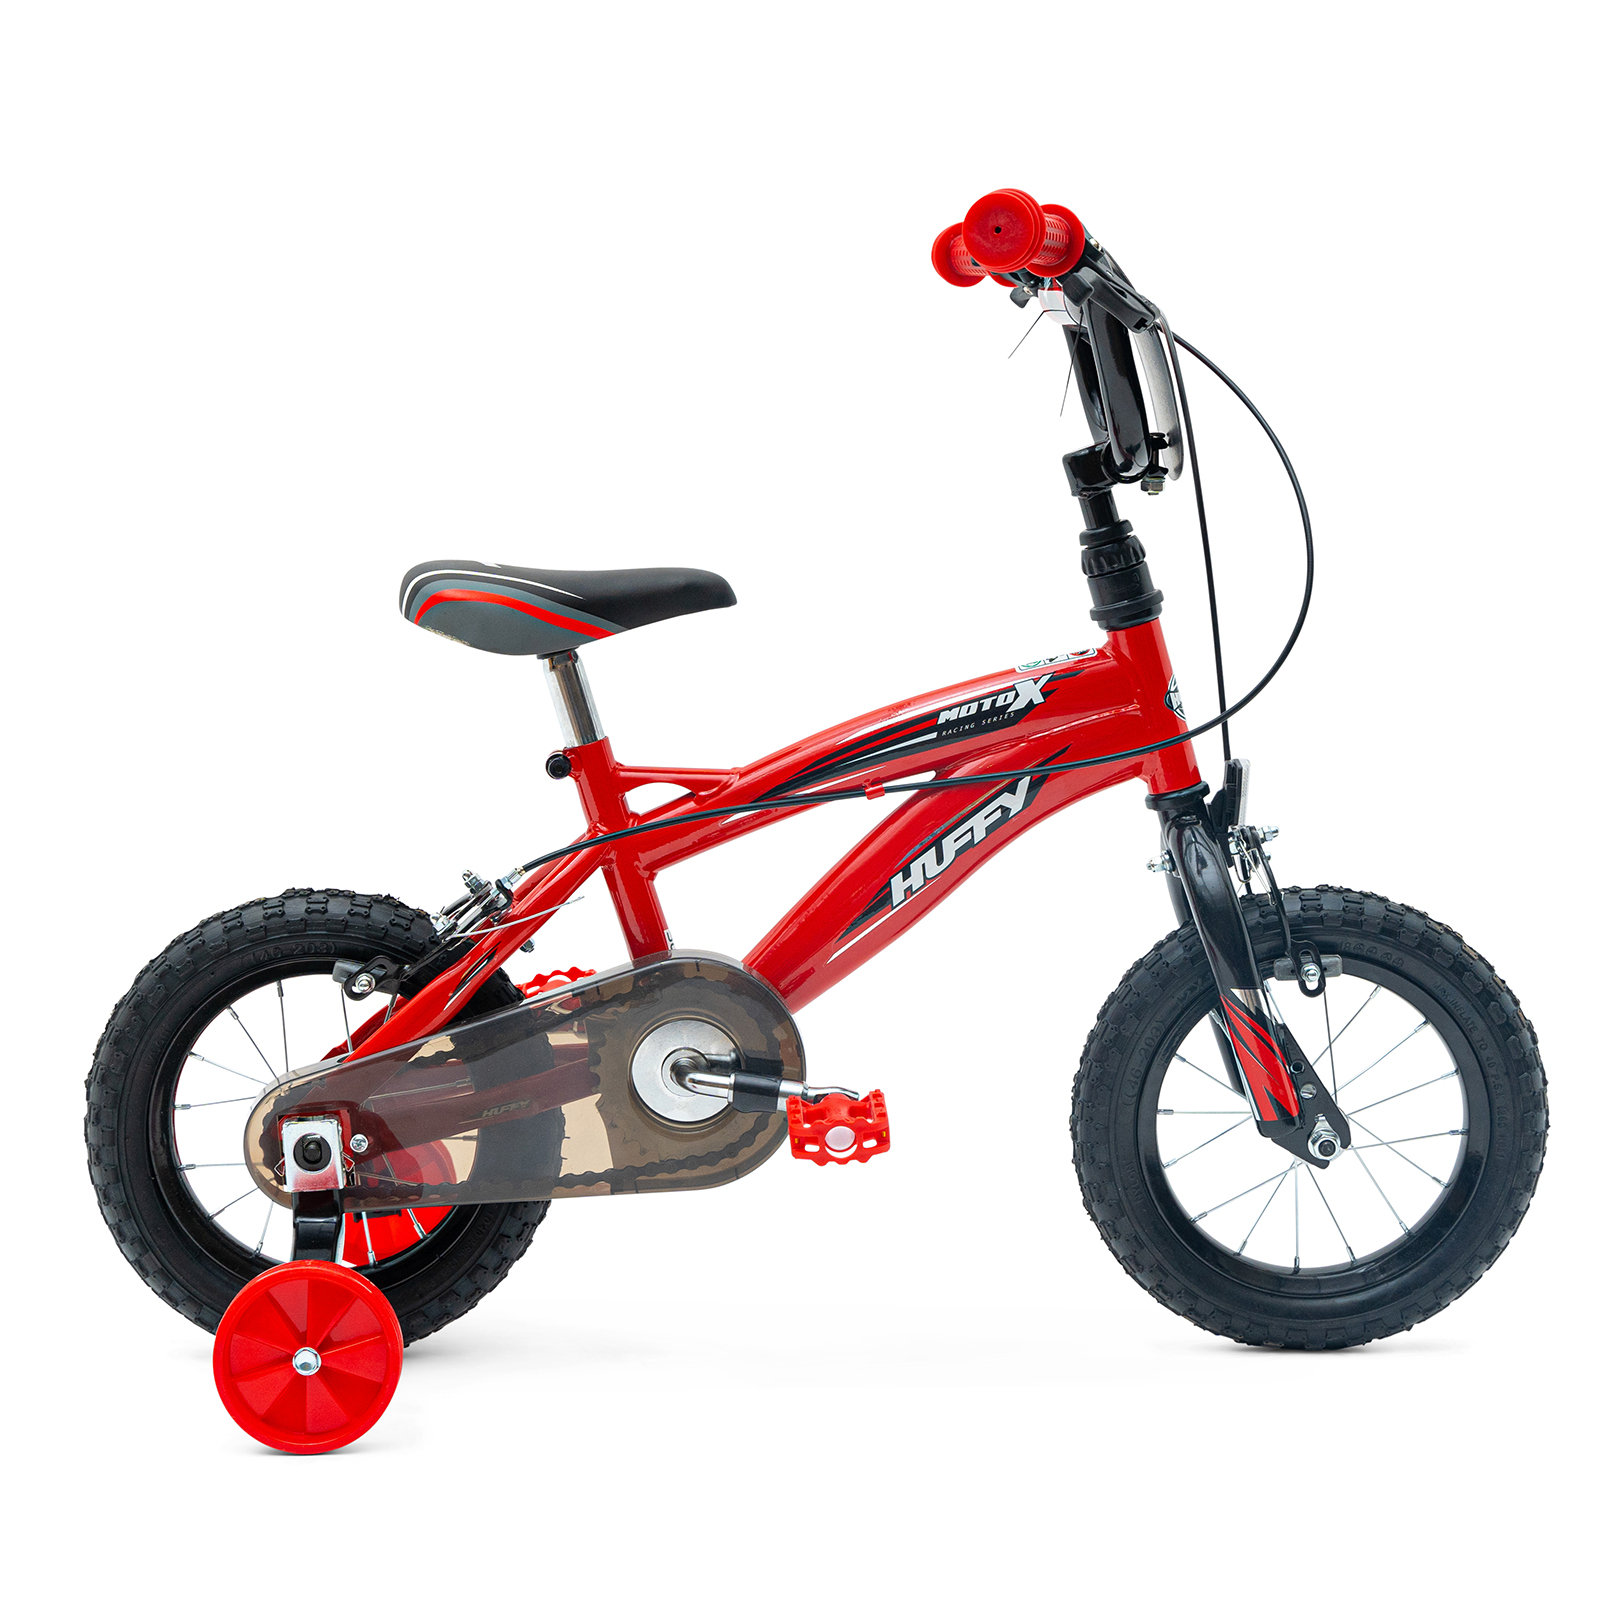 Huffy Moto X 12" Boys Bike - Red (3-5 Years)